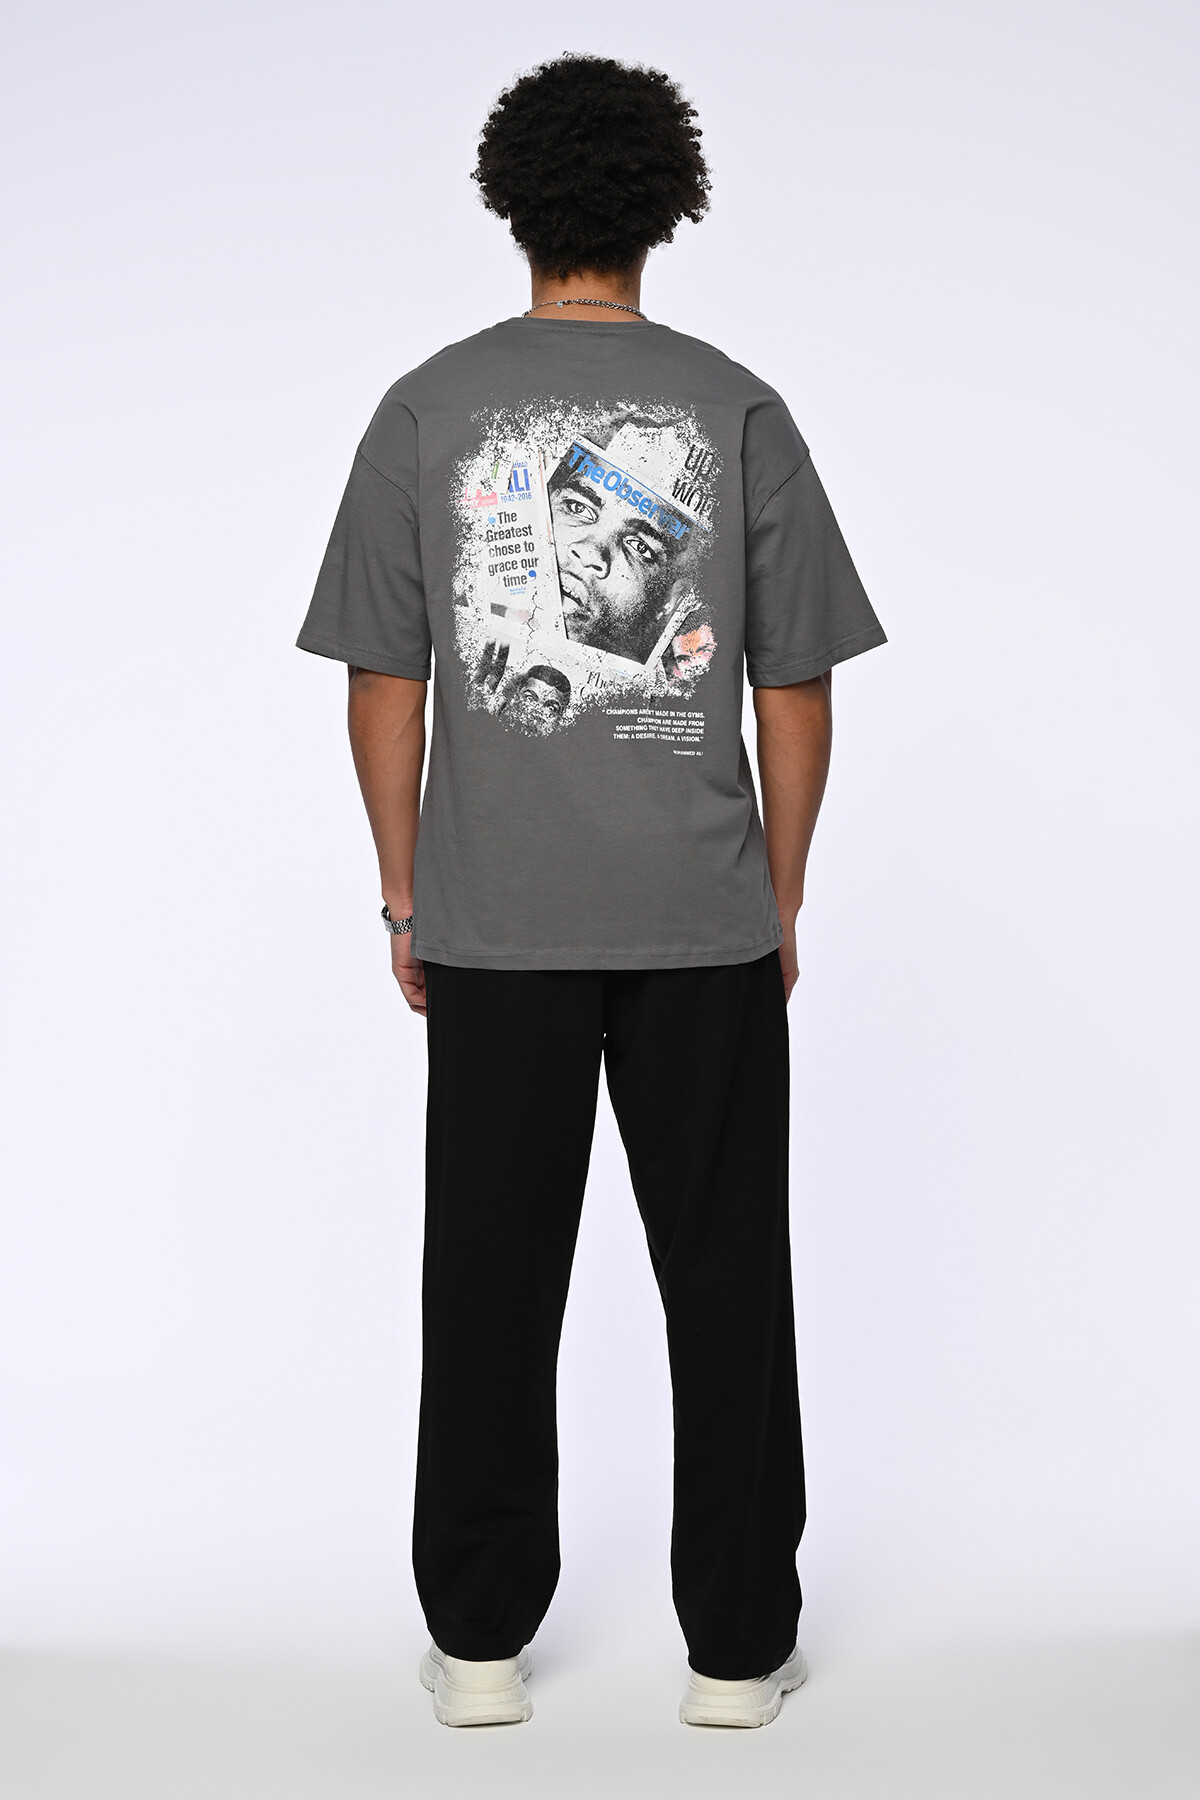 Koyu Füme Muhammed Ali Baskılı Oversize T-Shirt